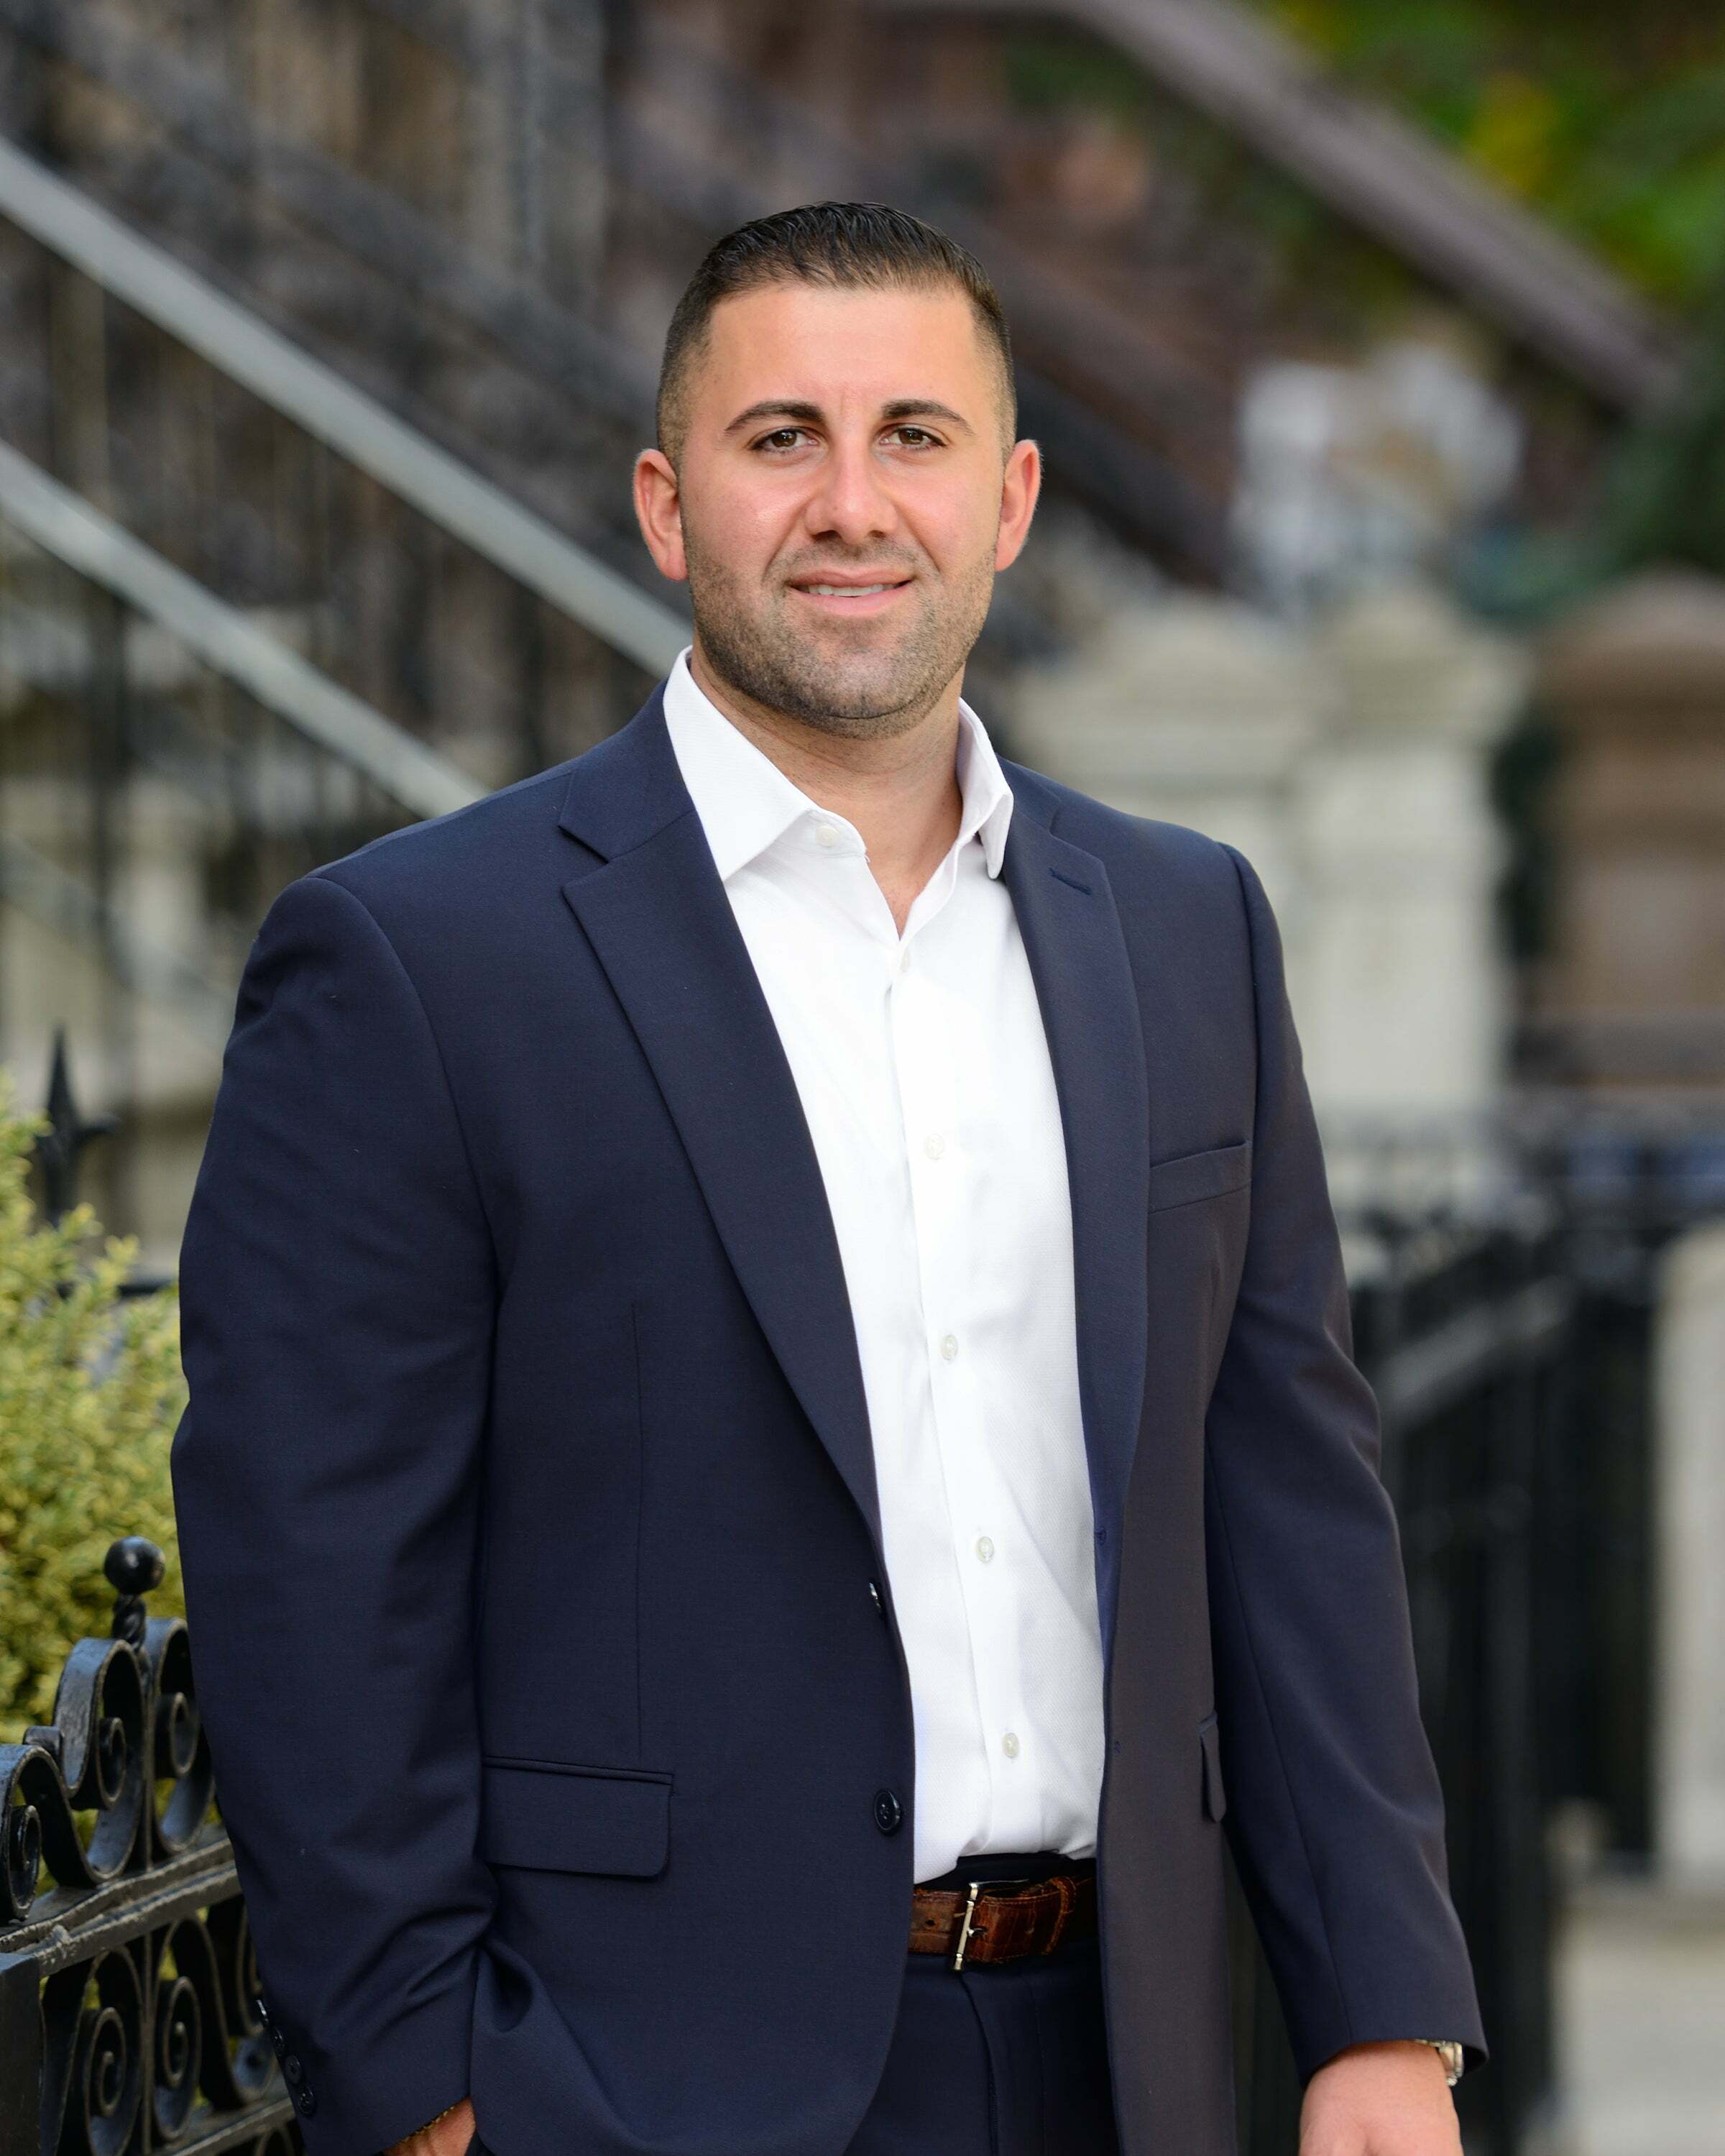 Francis C. DeBari, Real Estate Salesperson in Hoboken, Preferred Realty, Inc.